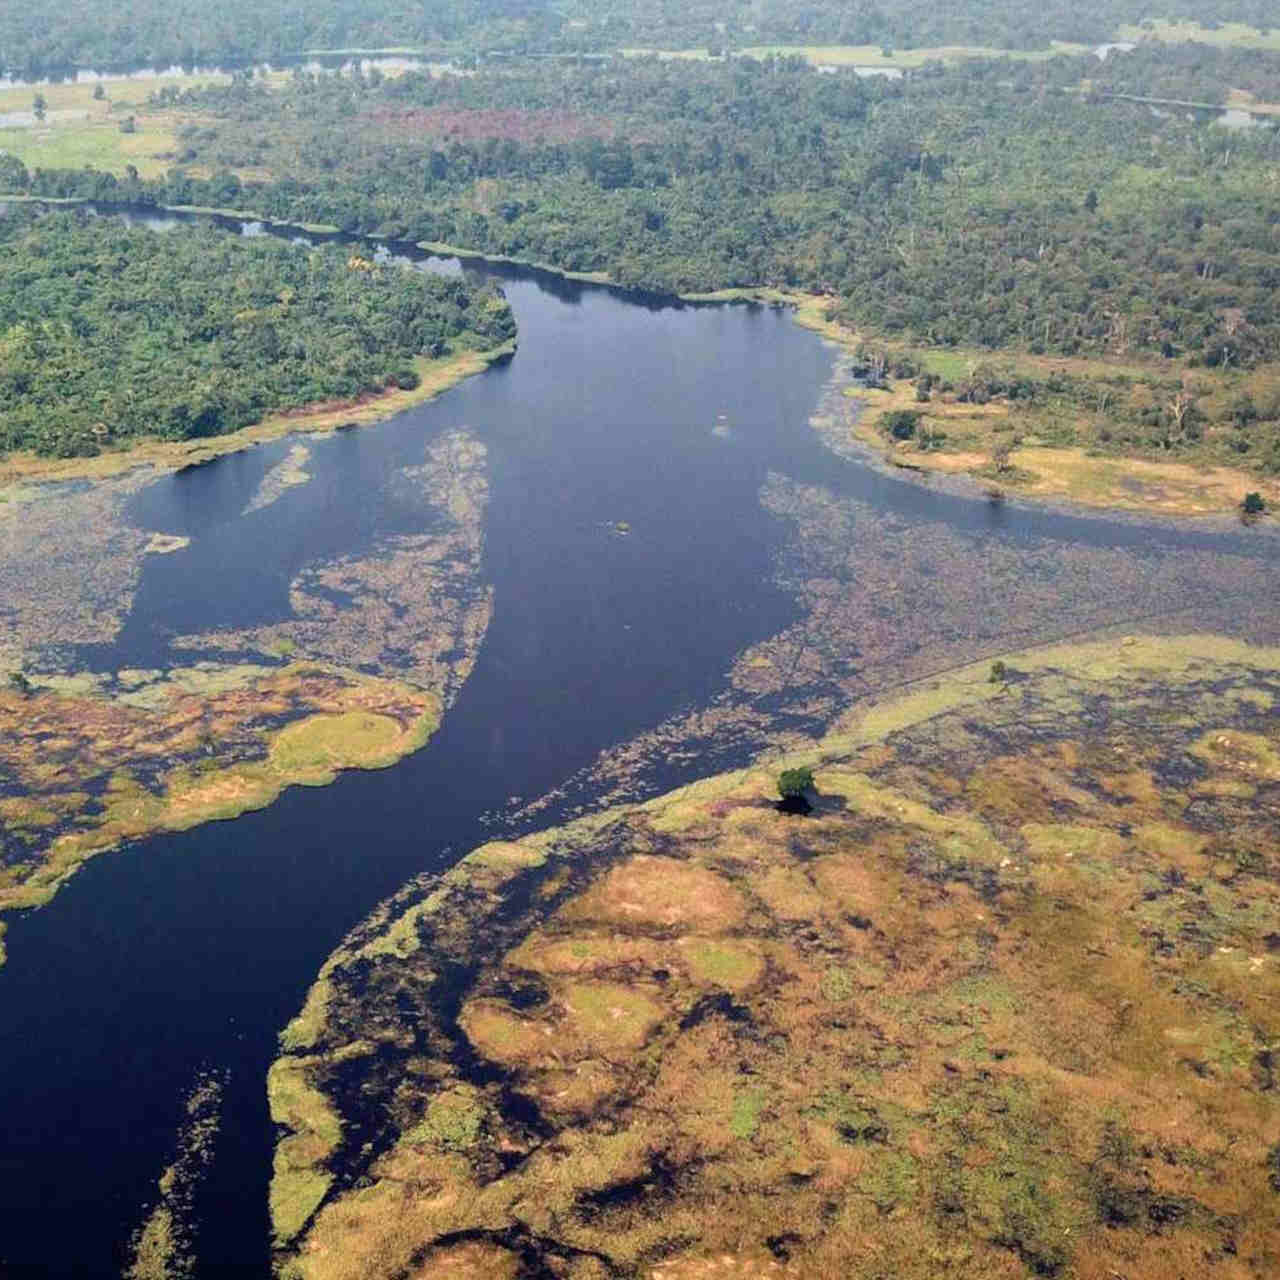 fiume più scuro del mondo: uno studio del Politecnico di Zurigo sul Ruki in Congo